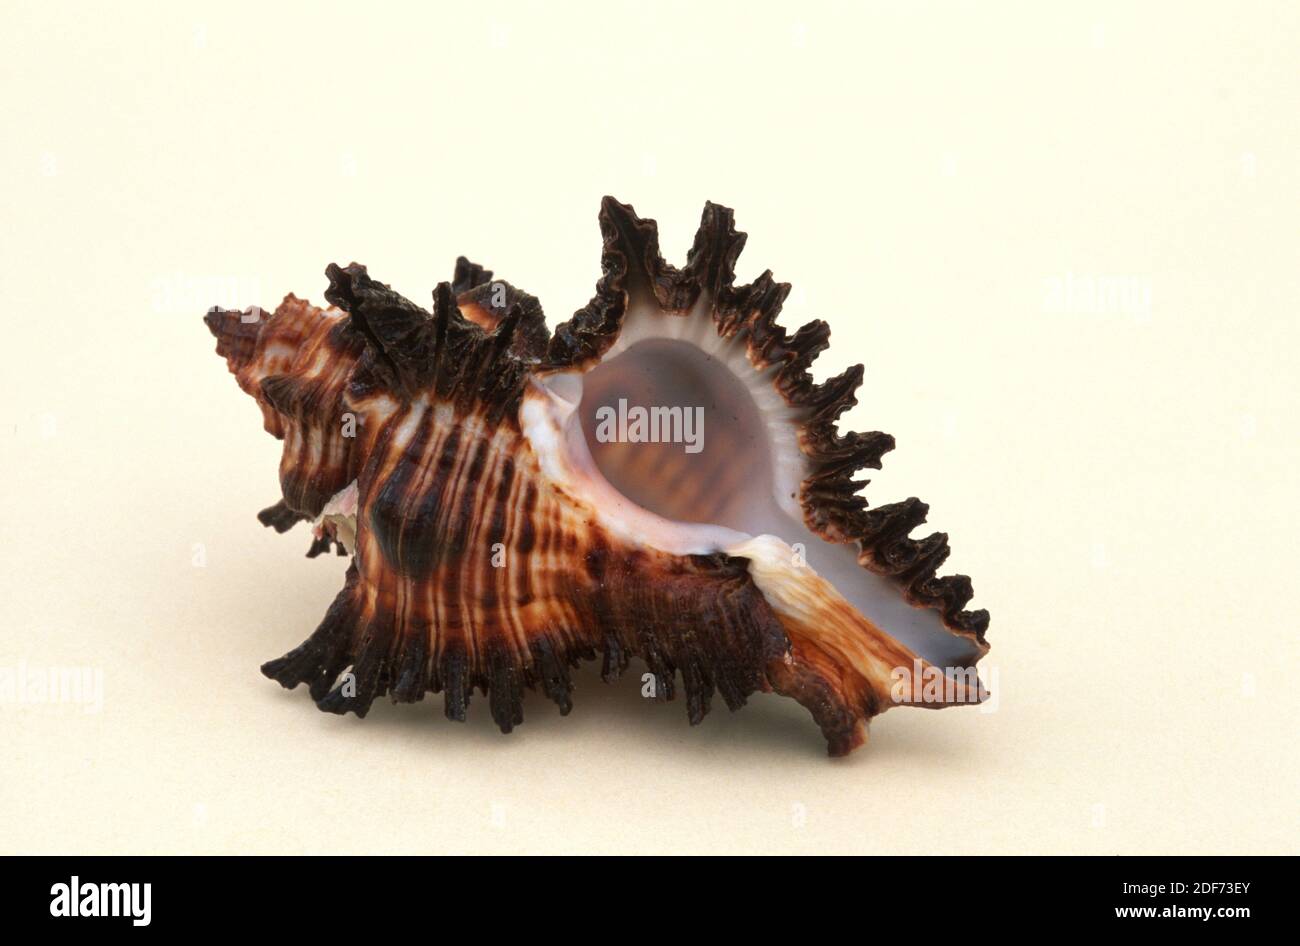 Steinschnecke (Murex brunens) ist eine fleischfressende Meeresschnecke. Schalendetail. Stockfoto